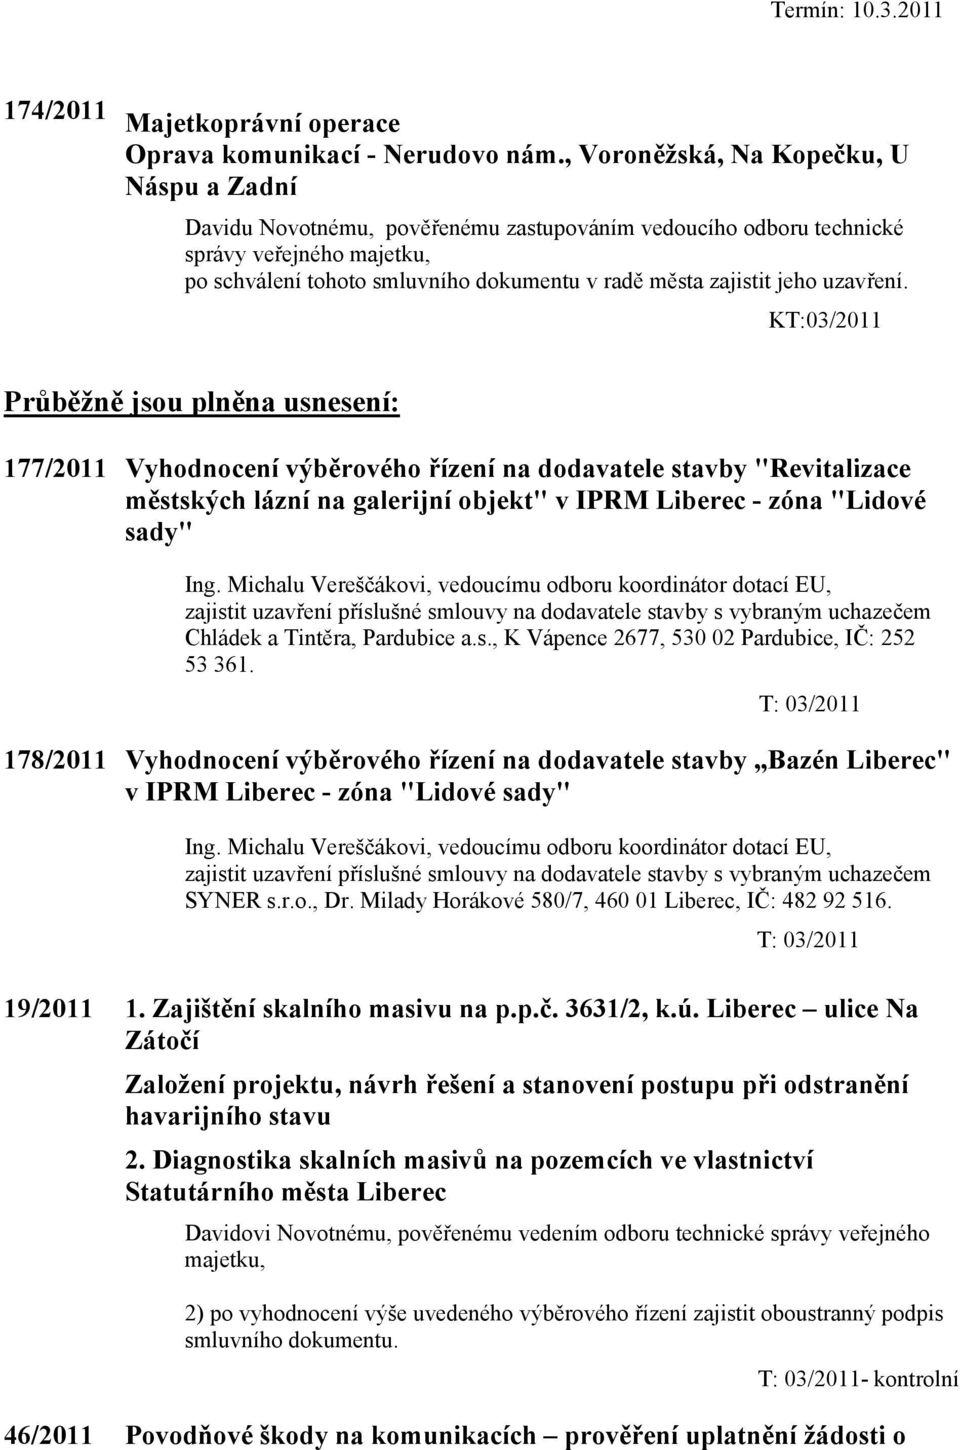 KT:03/2011 Průběžně jsou plněna usnesení: 177/2011 Vyhodnocení výběrového řízení na dodavatele stavby "Revitalizace městských lázní na galerijní objekt" v IPRM Liberec - zóna "Lidové sady" Ing.